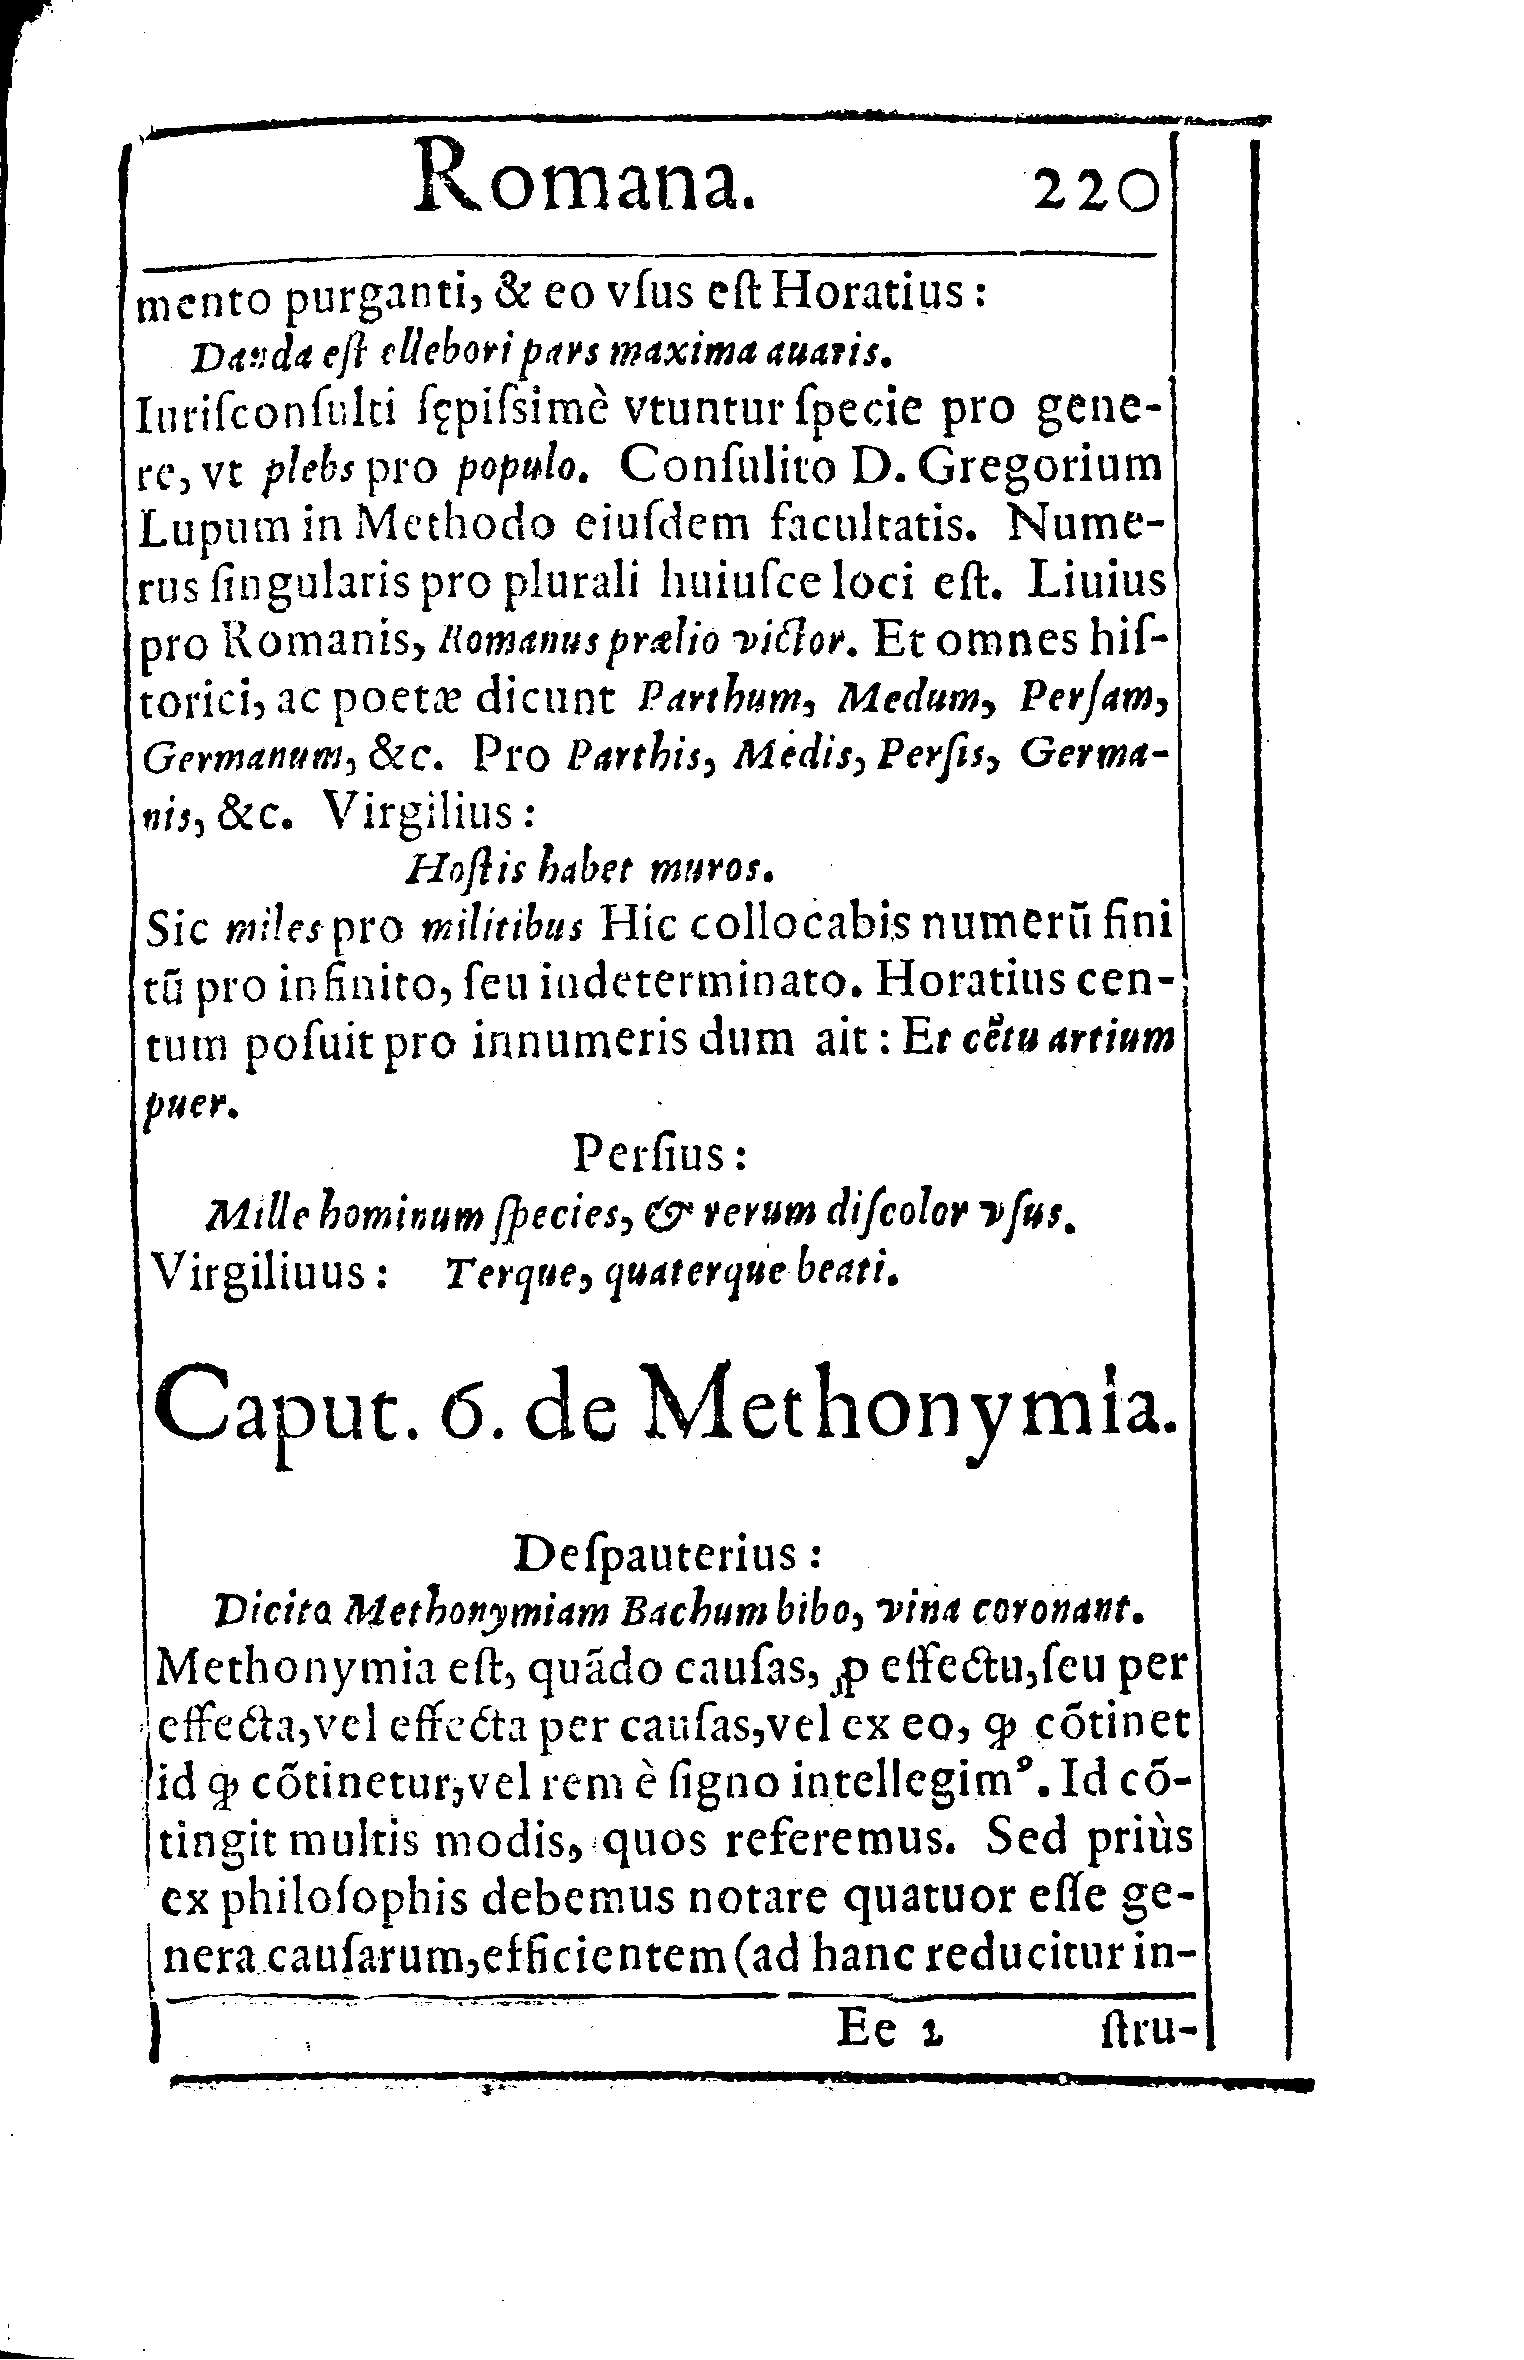 Caput. 6. de Methonymia